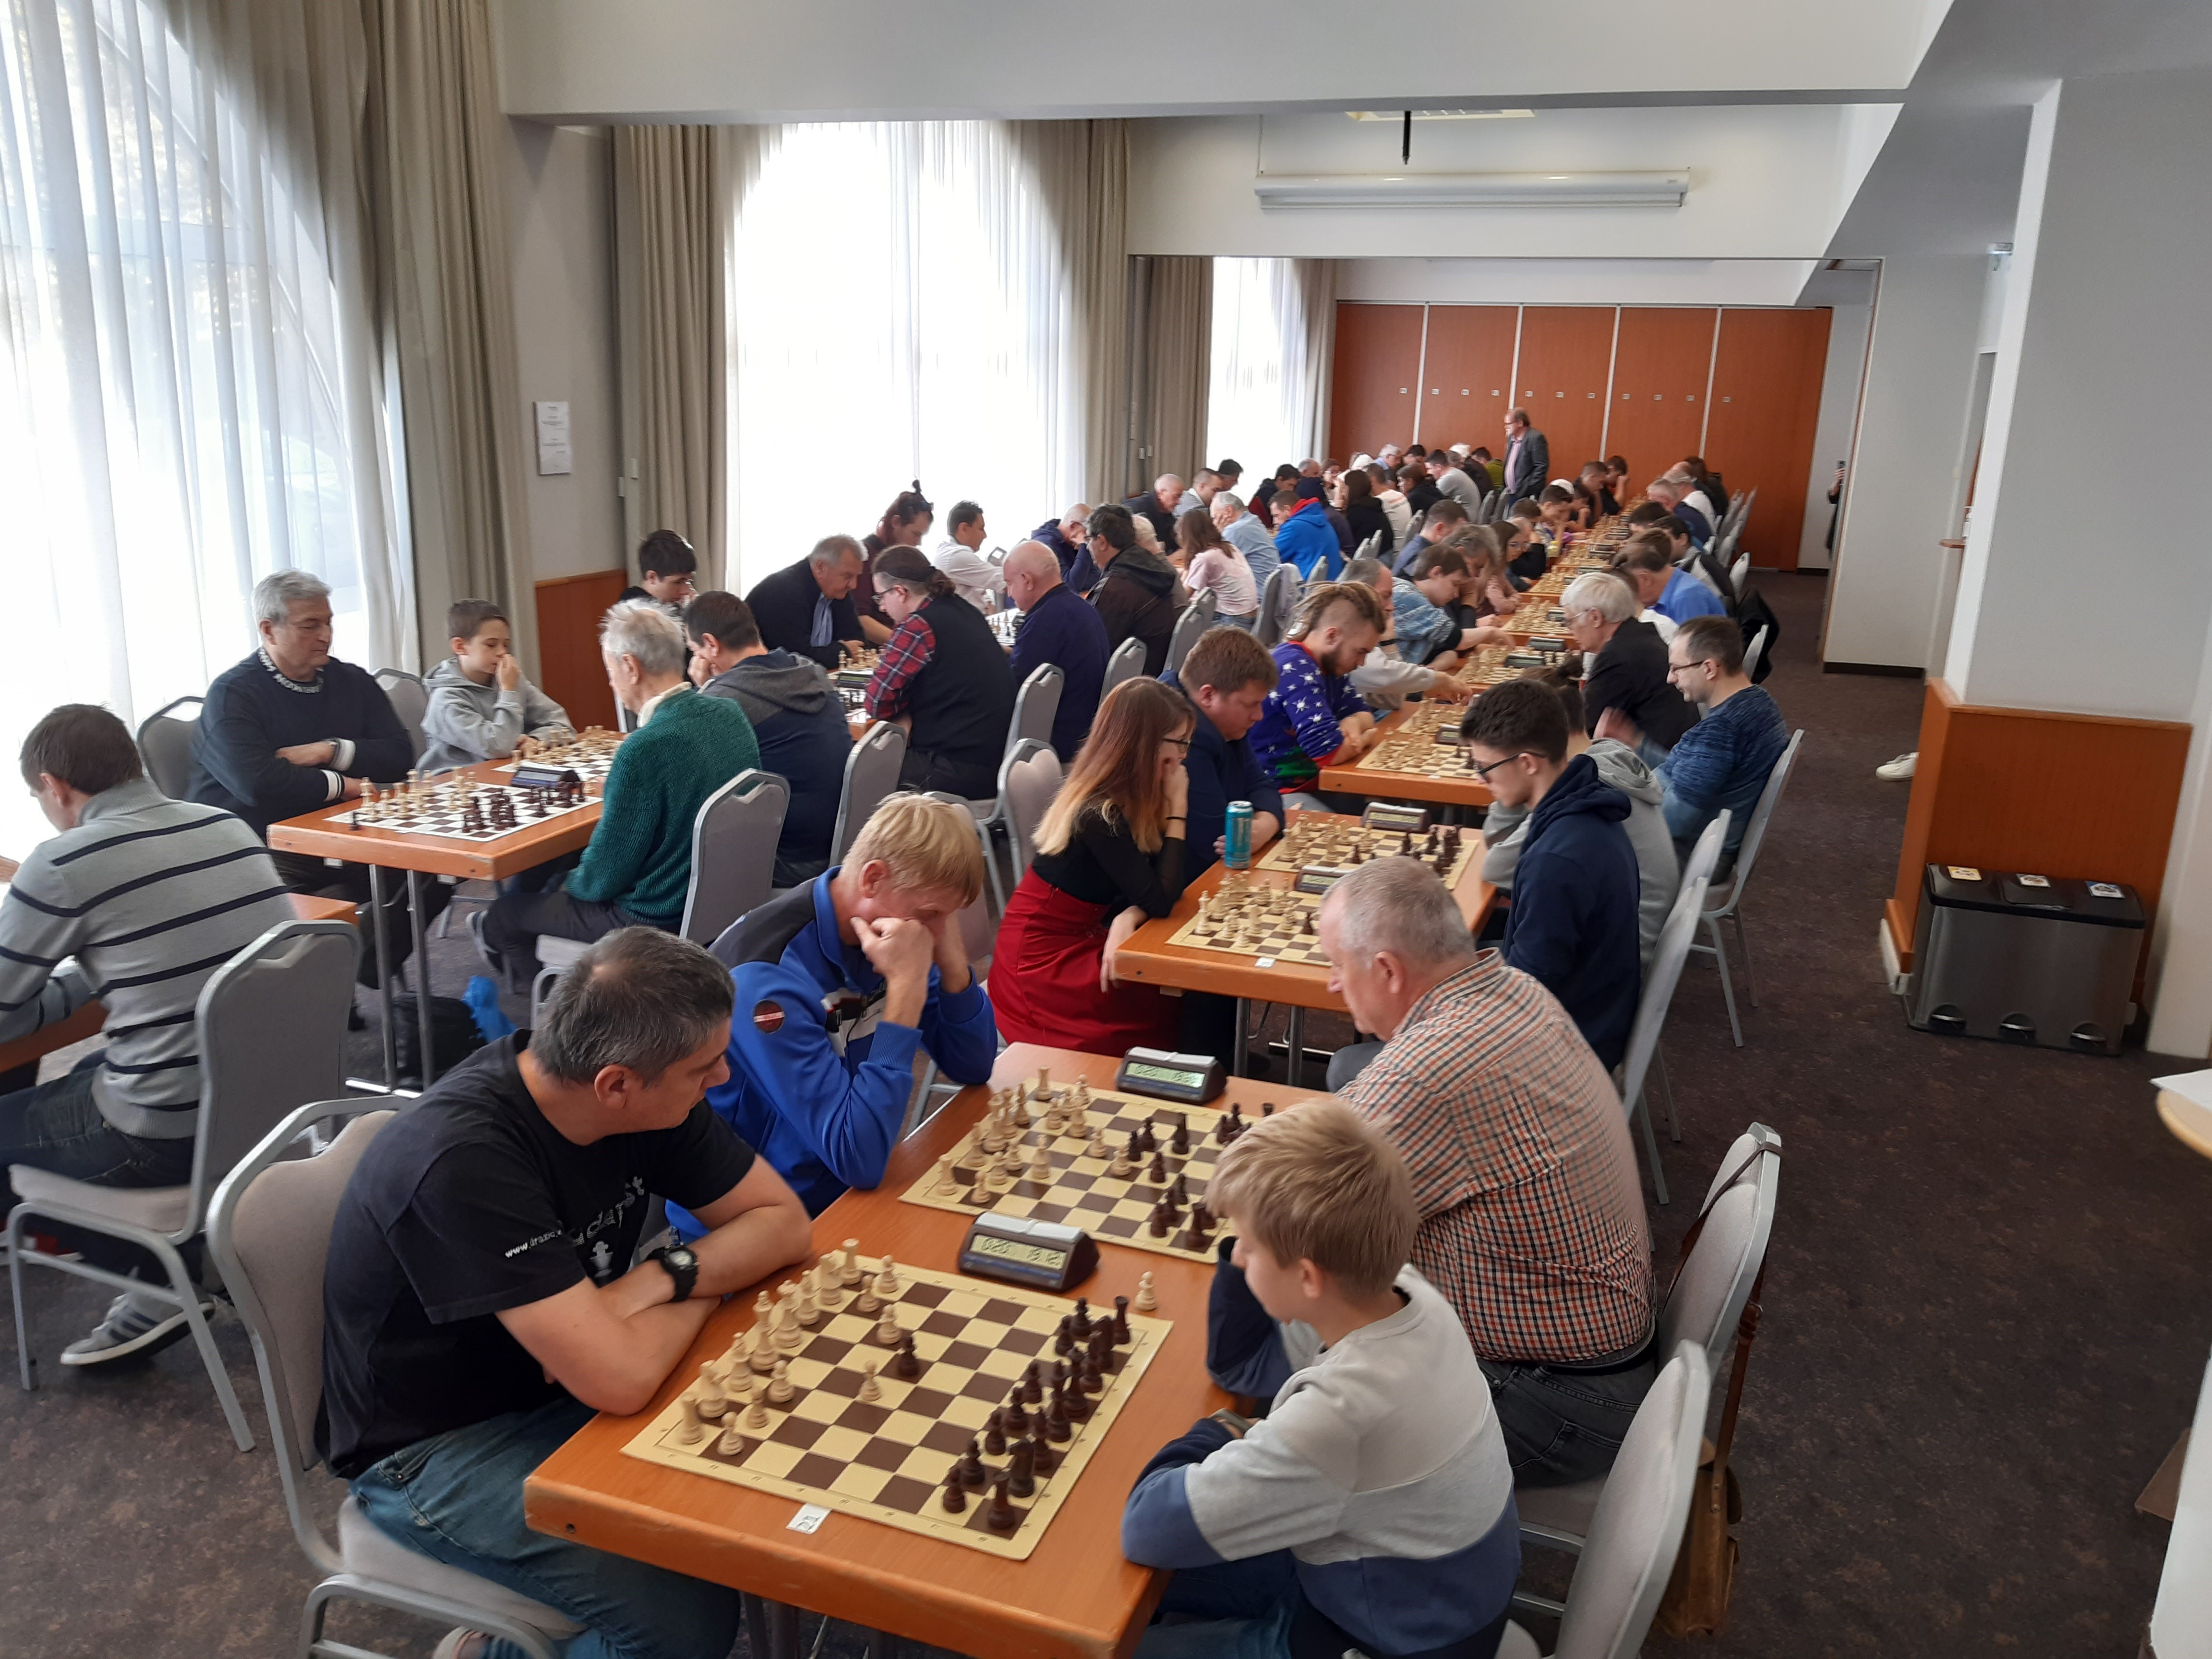 XVIII. Fehérvár-Böllhoff nemzetköri rapid sakkverseny a megyeszékhelyen